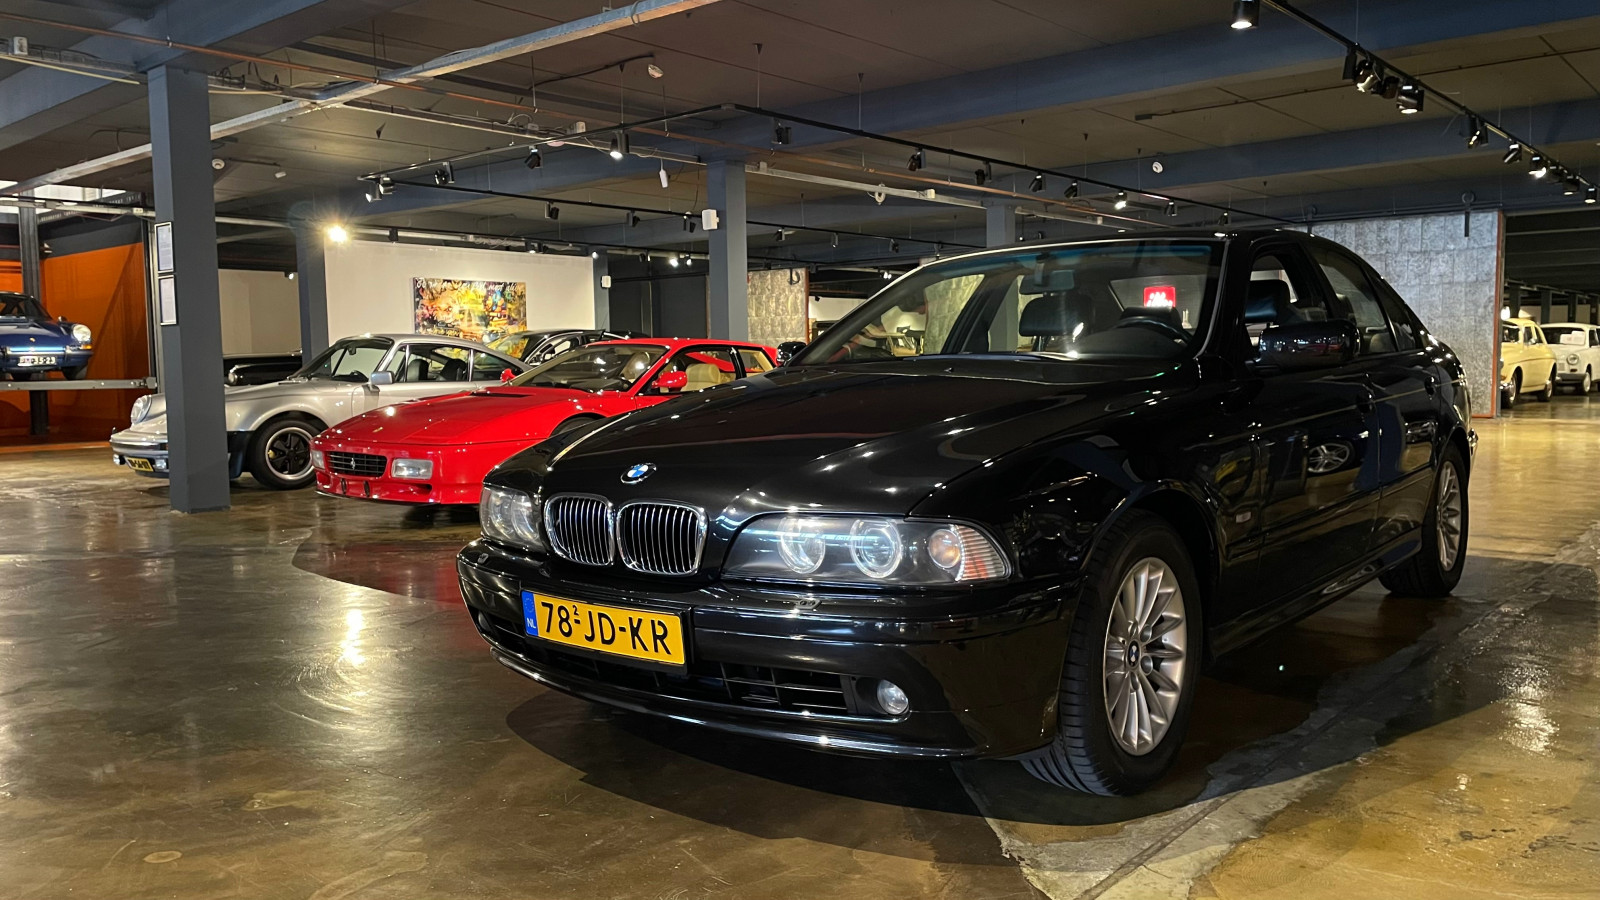 De voormalige BMW van Soerel